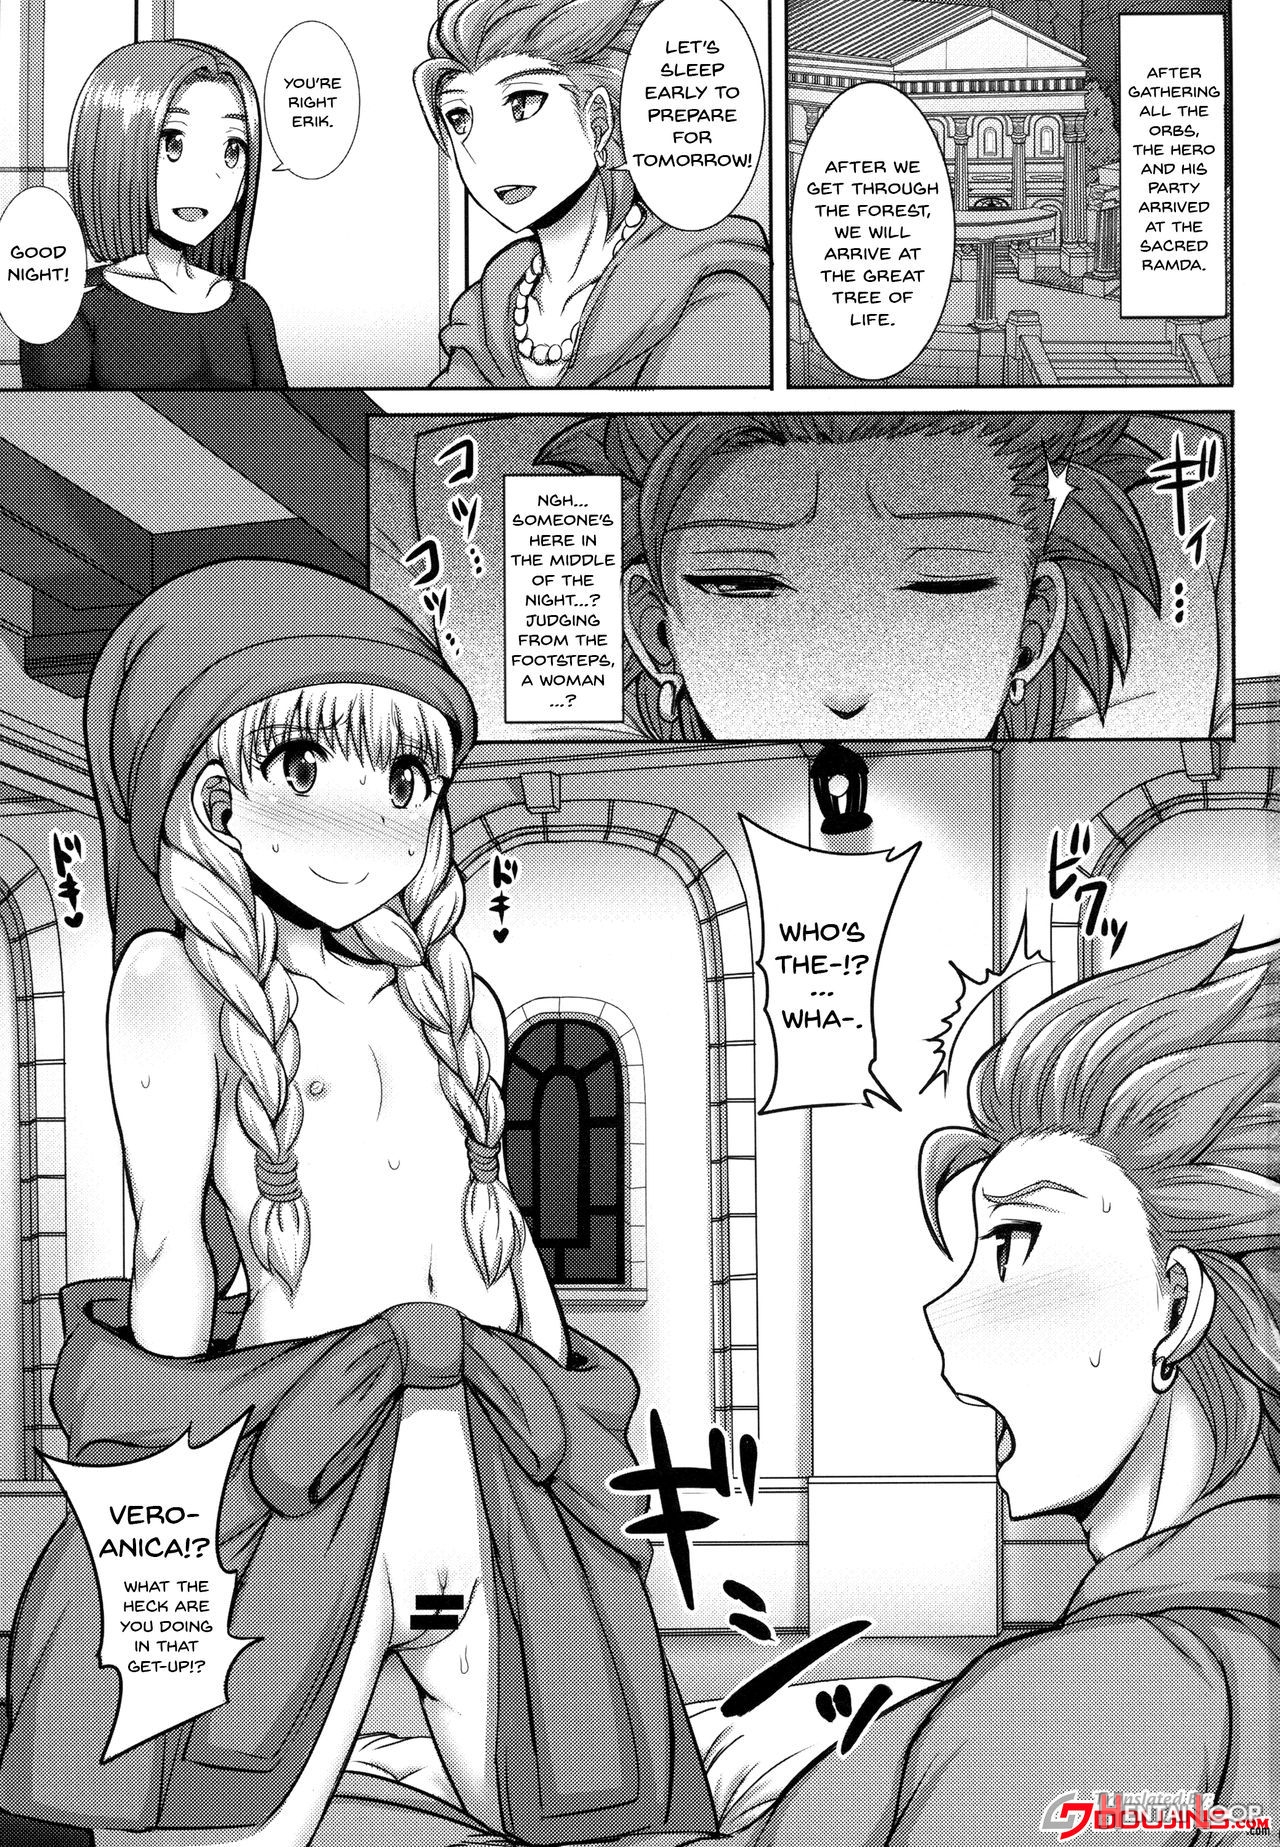 Veronica-sama Return page 2